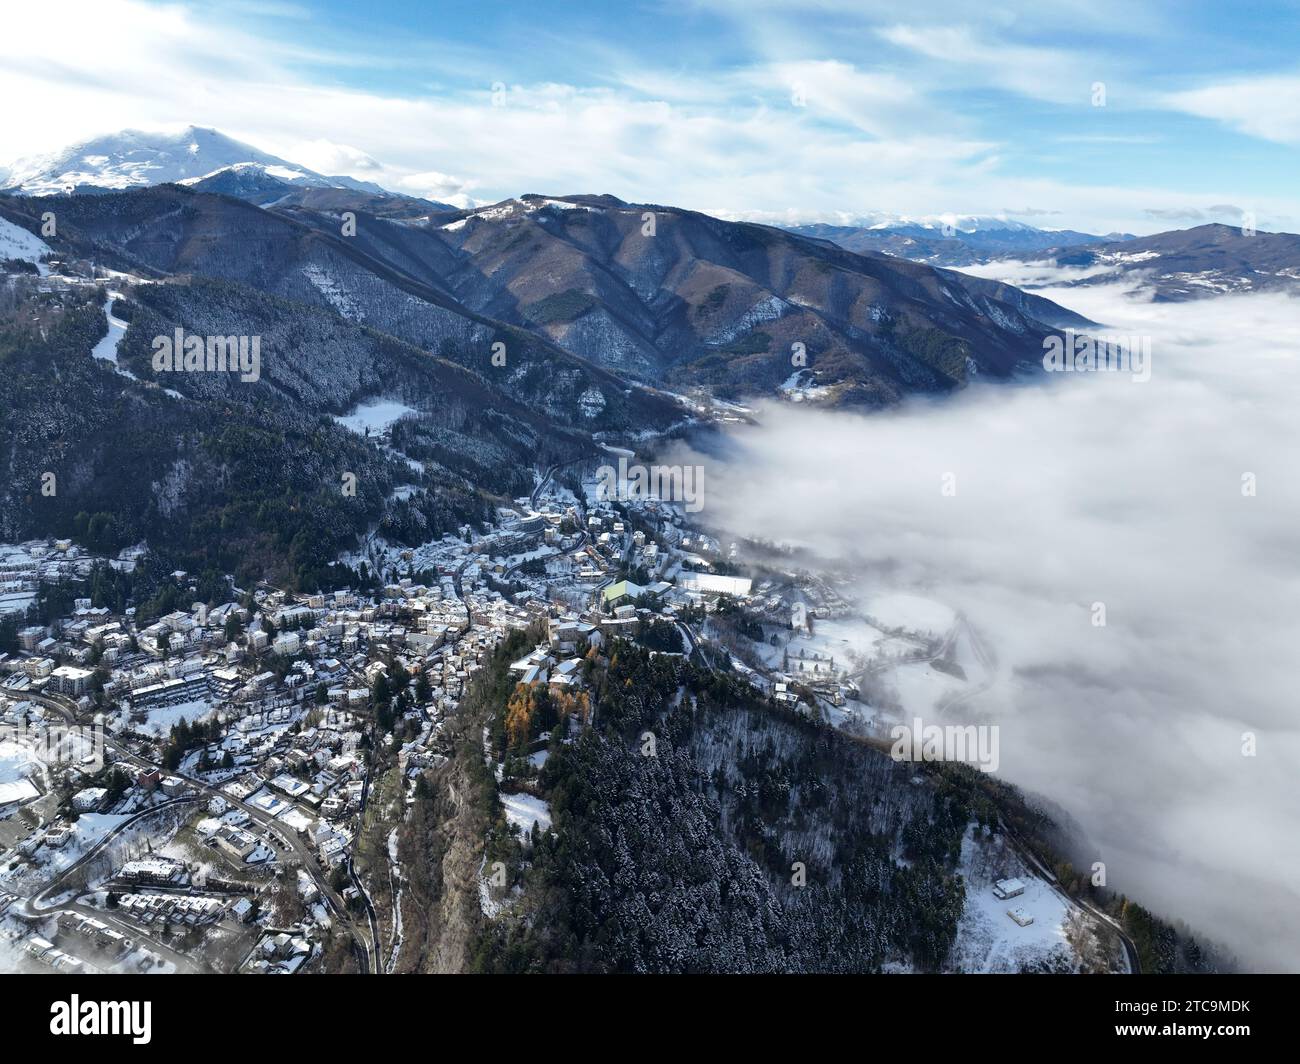 Eine beeindruckende Landschaft mit majestätischen Bergen und schneebedeckten Gipfeln, die den Horizont säumen Stockfoto